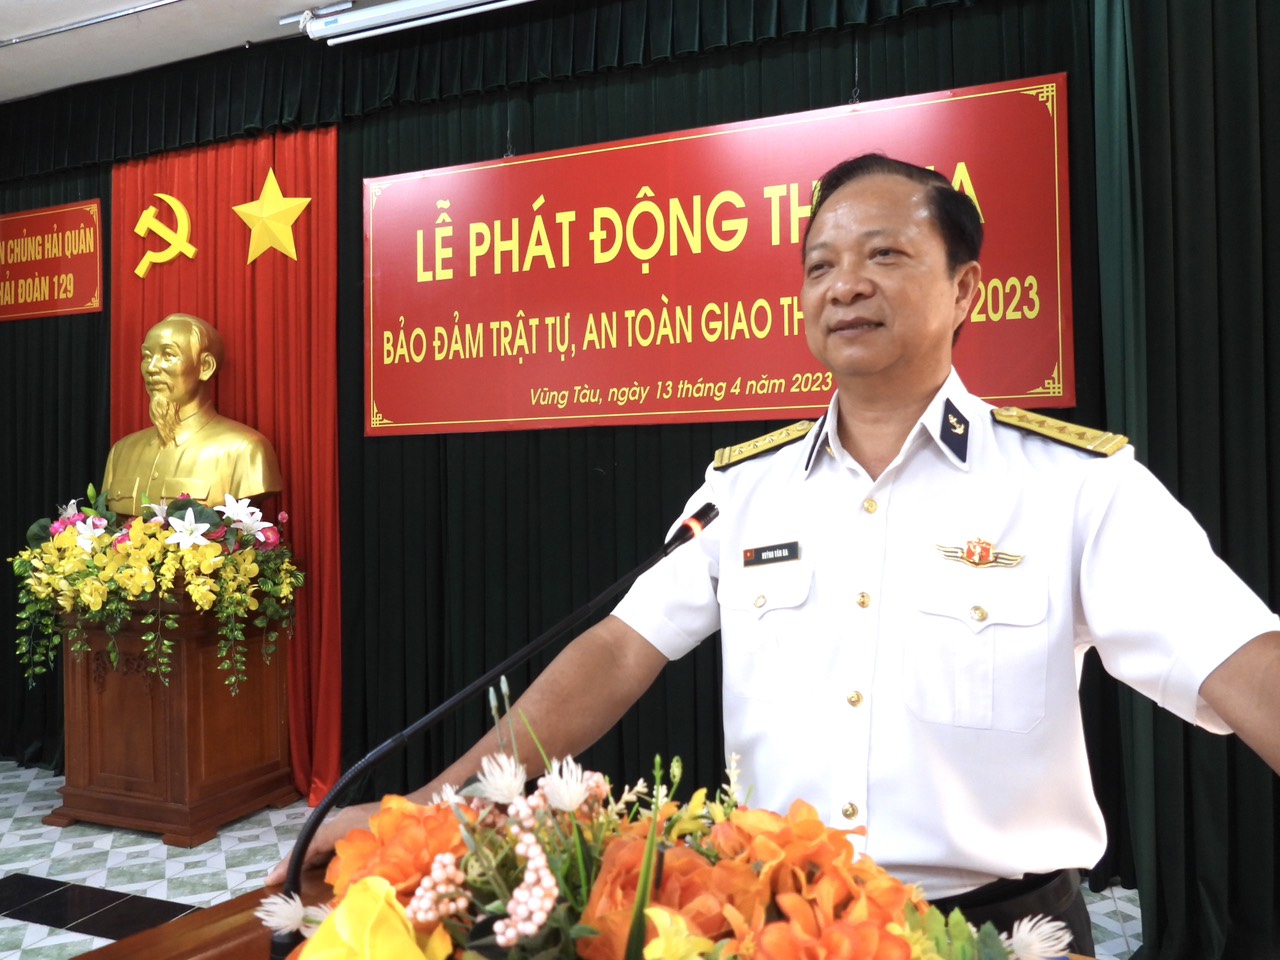 Đại tá Huỳnh Văn Đa, Bí thư Đảng ủy, Chính ủy Hải đoàn 129 phát động phong trào thi đua bảo đảm trật tự, an toàn giao thông năm 2023.